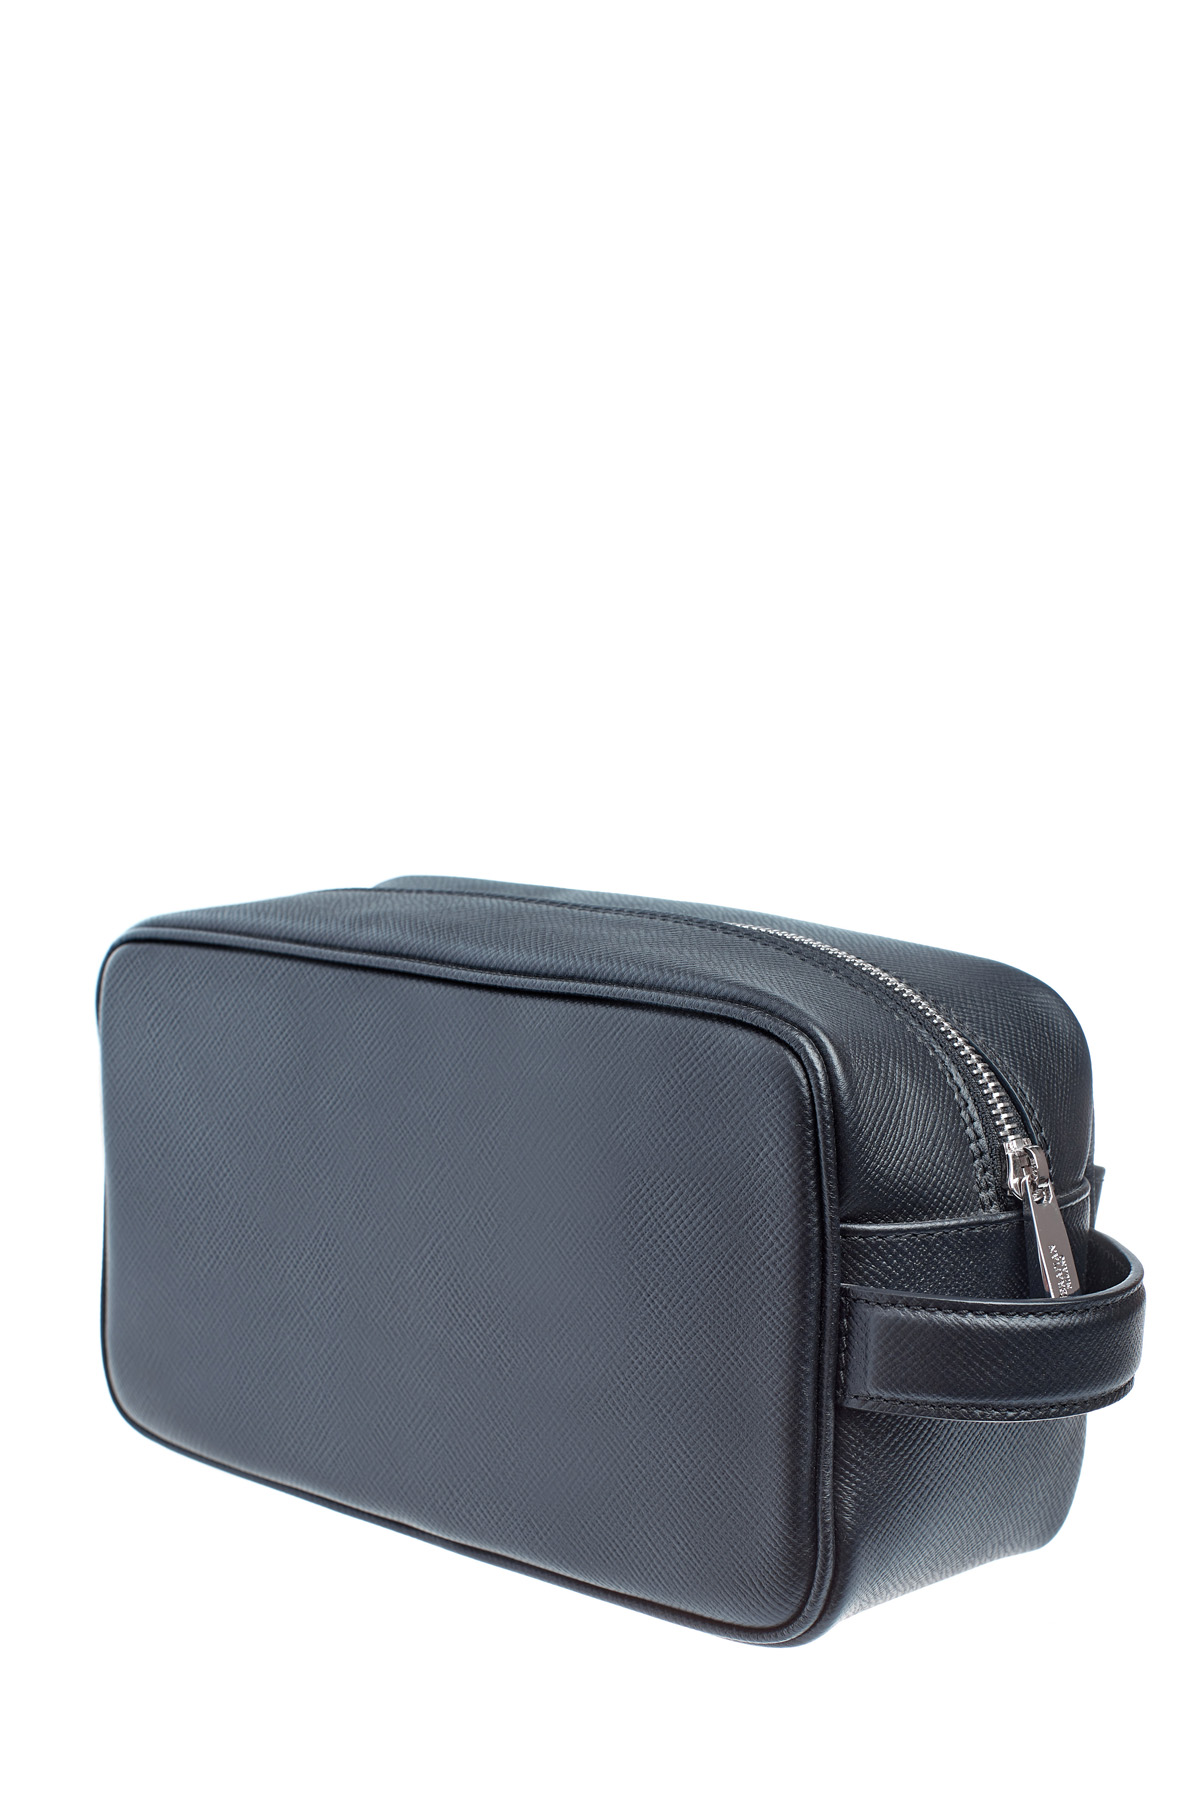 Кожаный несессер в классическом стиле с фирменным сафьяновым тиснением SERAPIAN, цвет черный, размер XS;S;M - фото 5